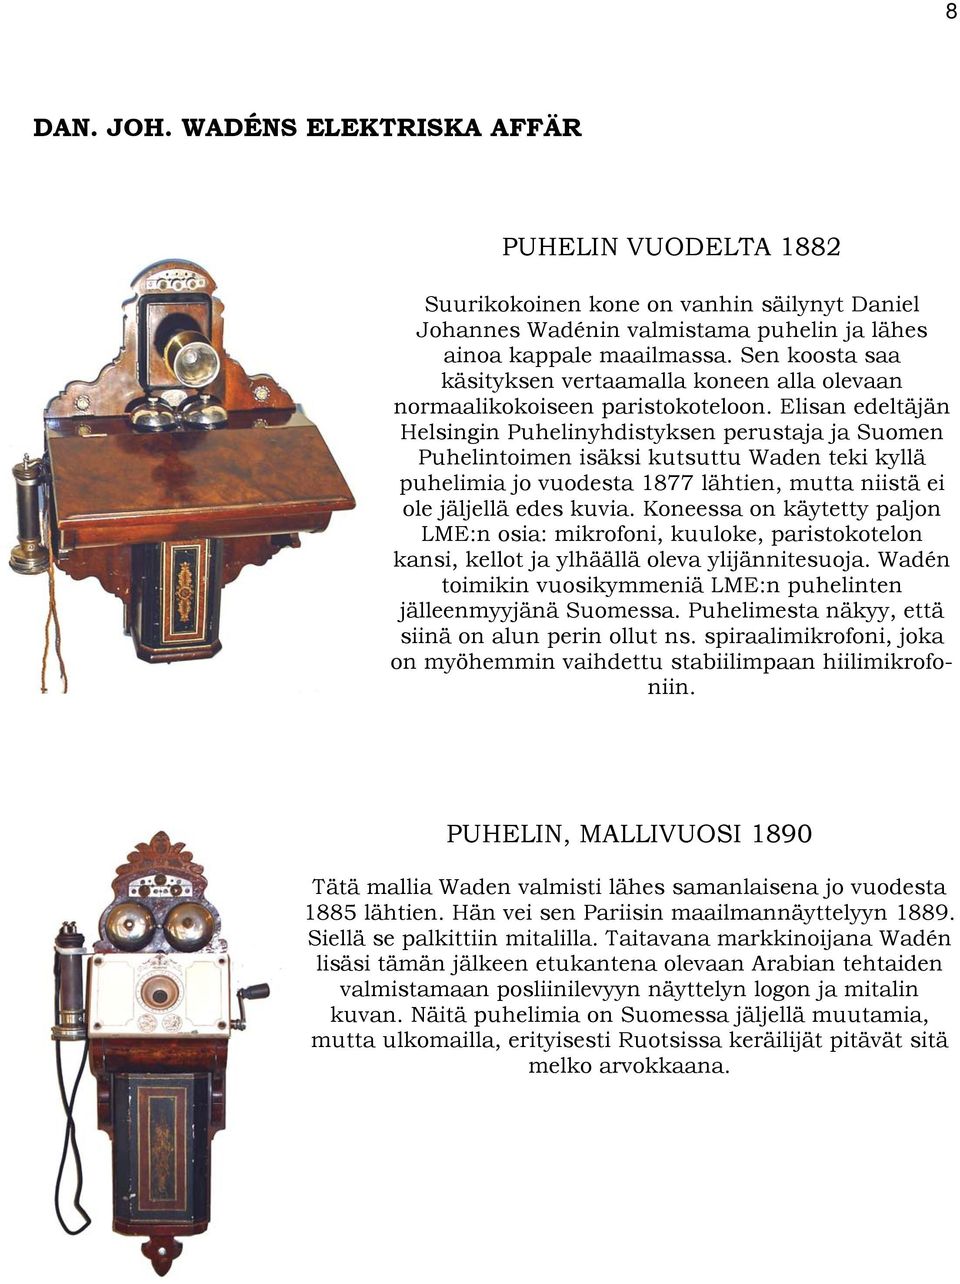 Elisan edeltäjän Helsingin Puhelinyhdistyksen perustaja ja Suomen Puhelintoimen isäksi kutsuttu Waden teki kyllä puhelimia jo vuodesta 1877 lähtien, mutta niistä ei ole jäljellä edes kuvia.